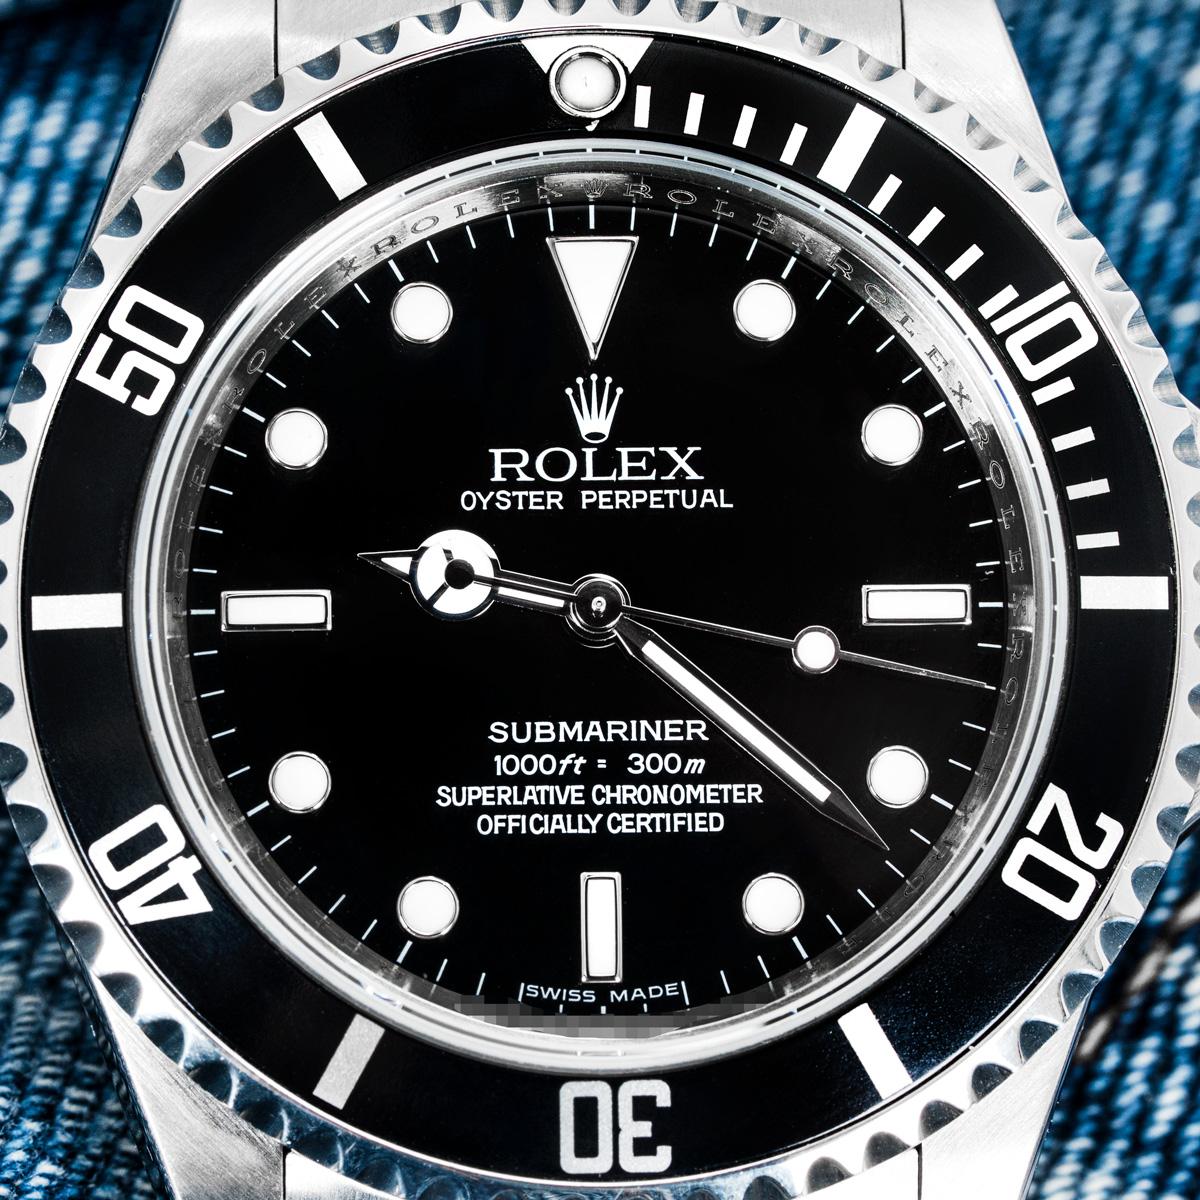 Eine Oystersteel Submariner Non-Date von Rolex. Sie verfügt über ein schwarzes Zifferblatt mit einem markanten 4-Linien-Schriftzug und eine unidirektional drehbare Lünette mit schwarzem Lünetteneinsatz und 60-Minuten-Teilung. Das Oyster-Armband wird